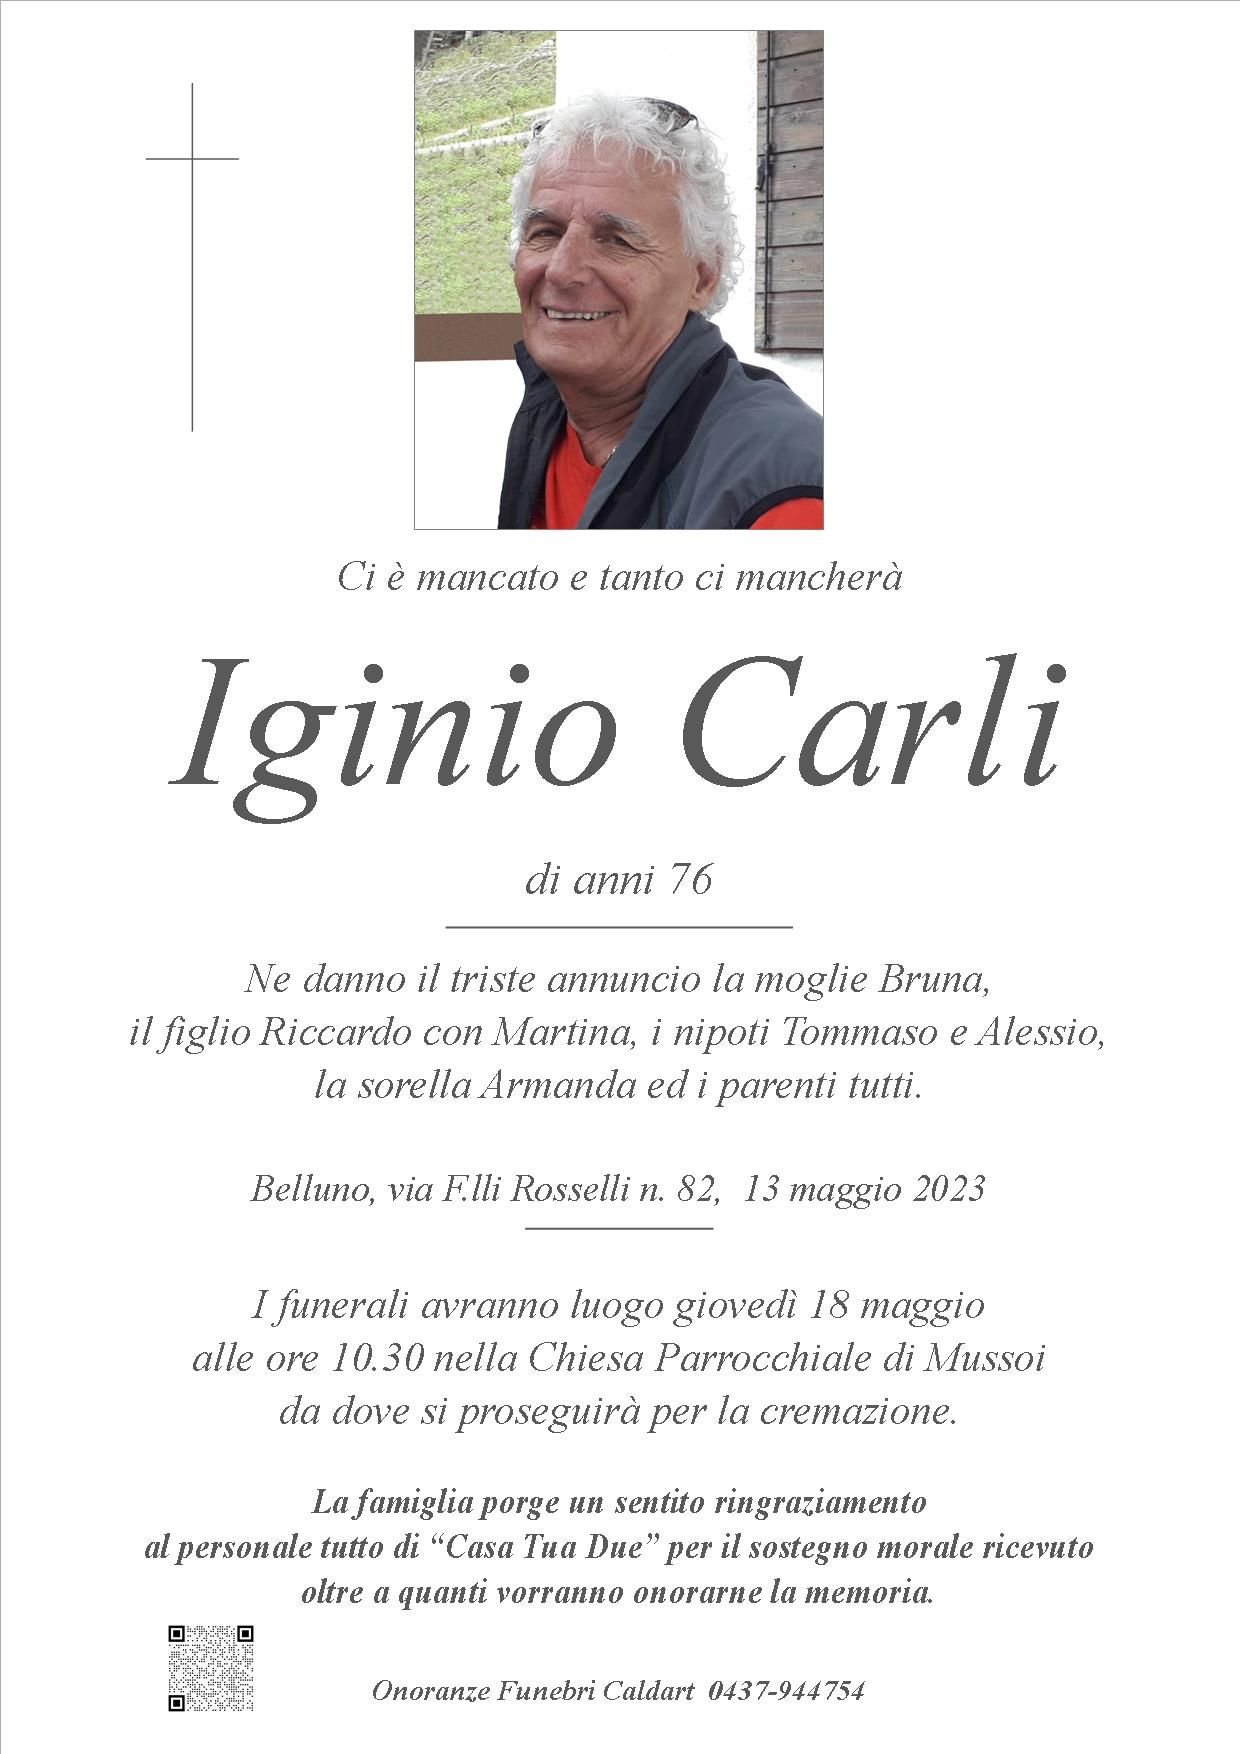 Carli Iginio